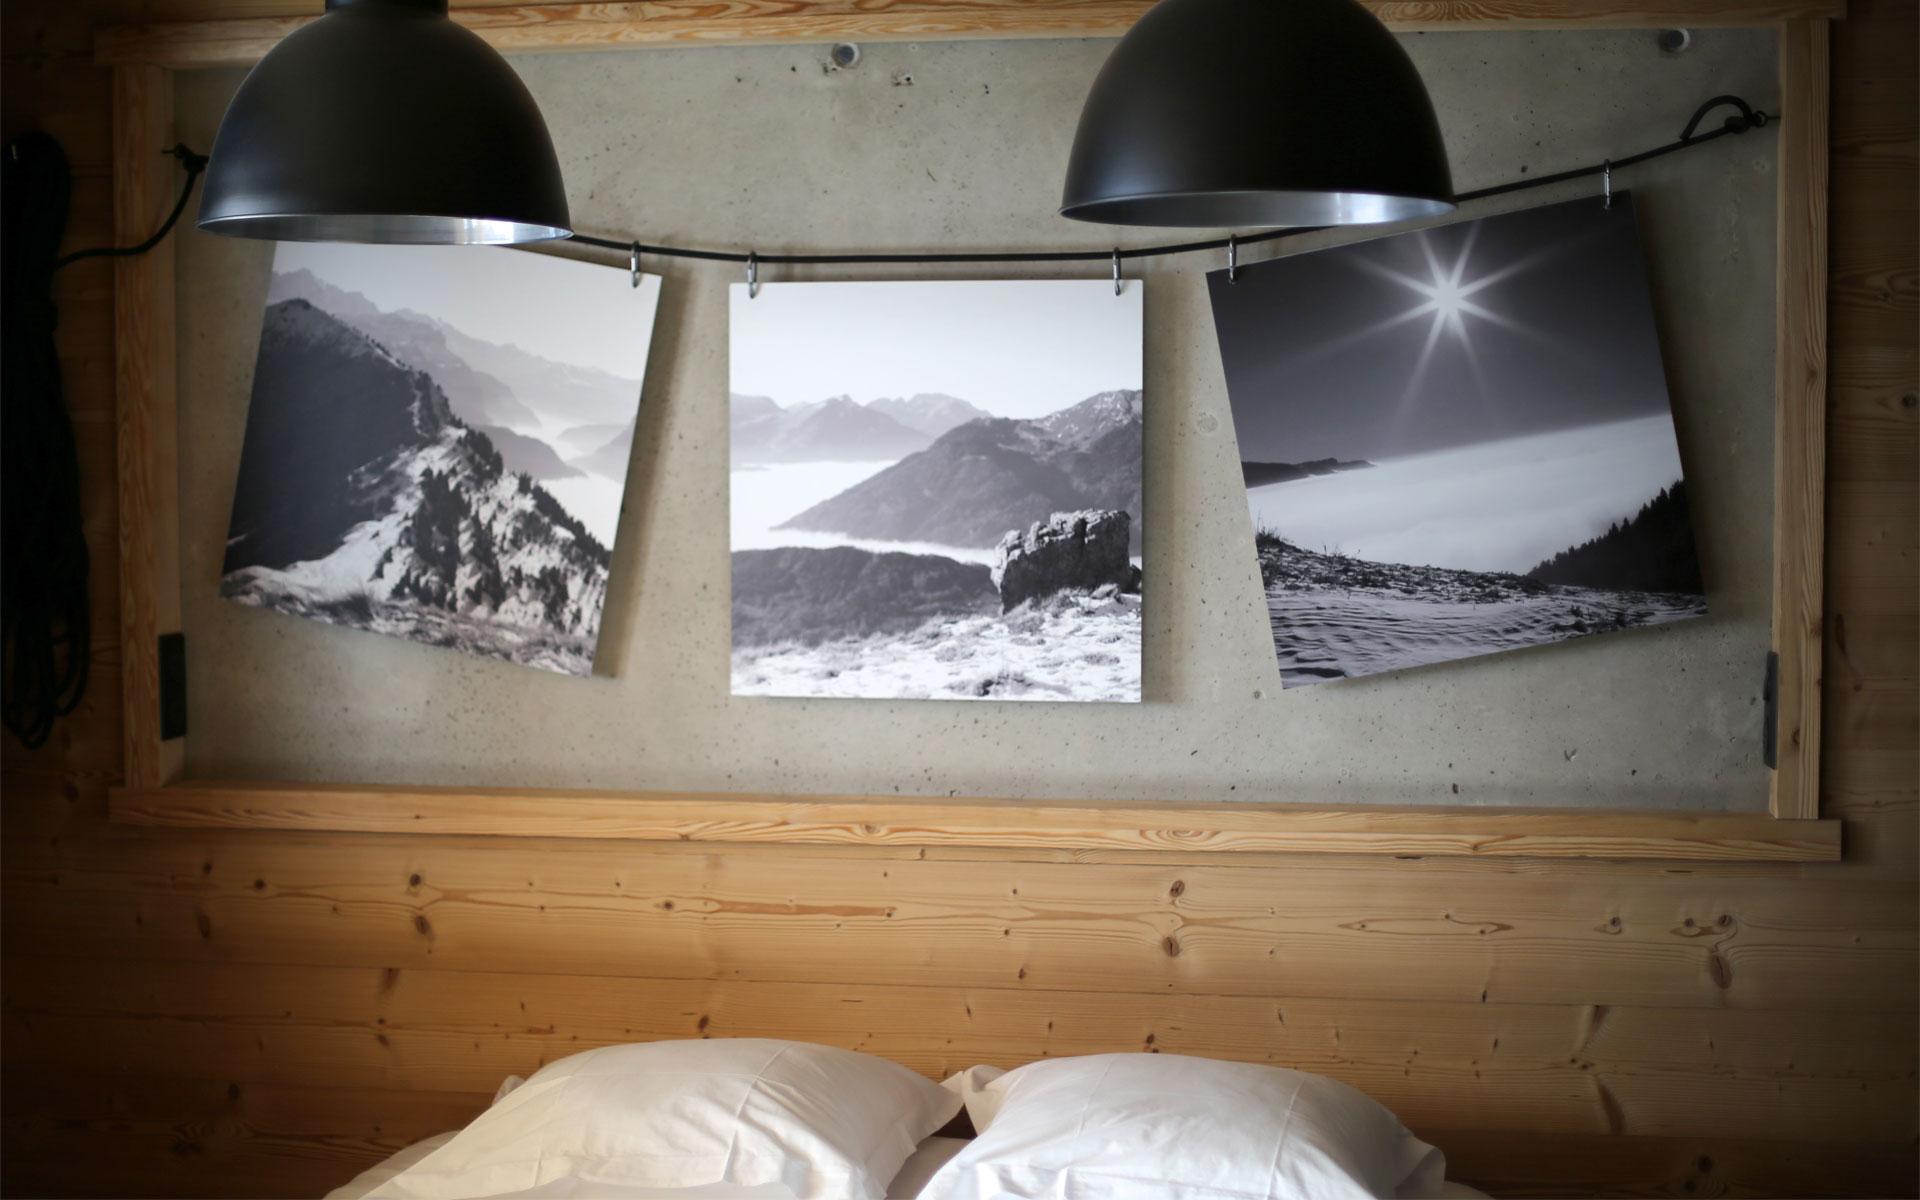 Tête de lit décorée avec des photographies en noir et blanc des alpes